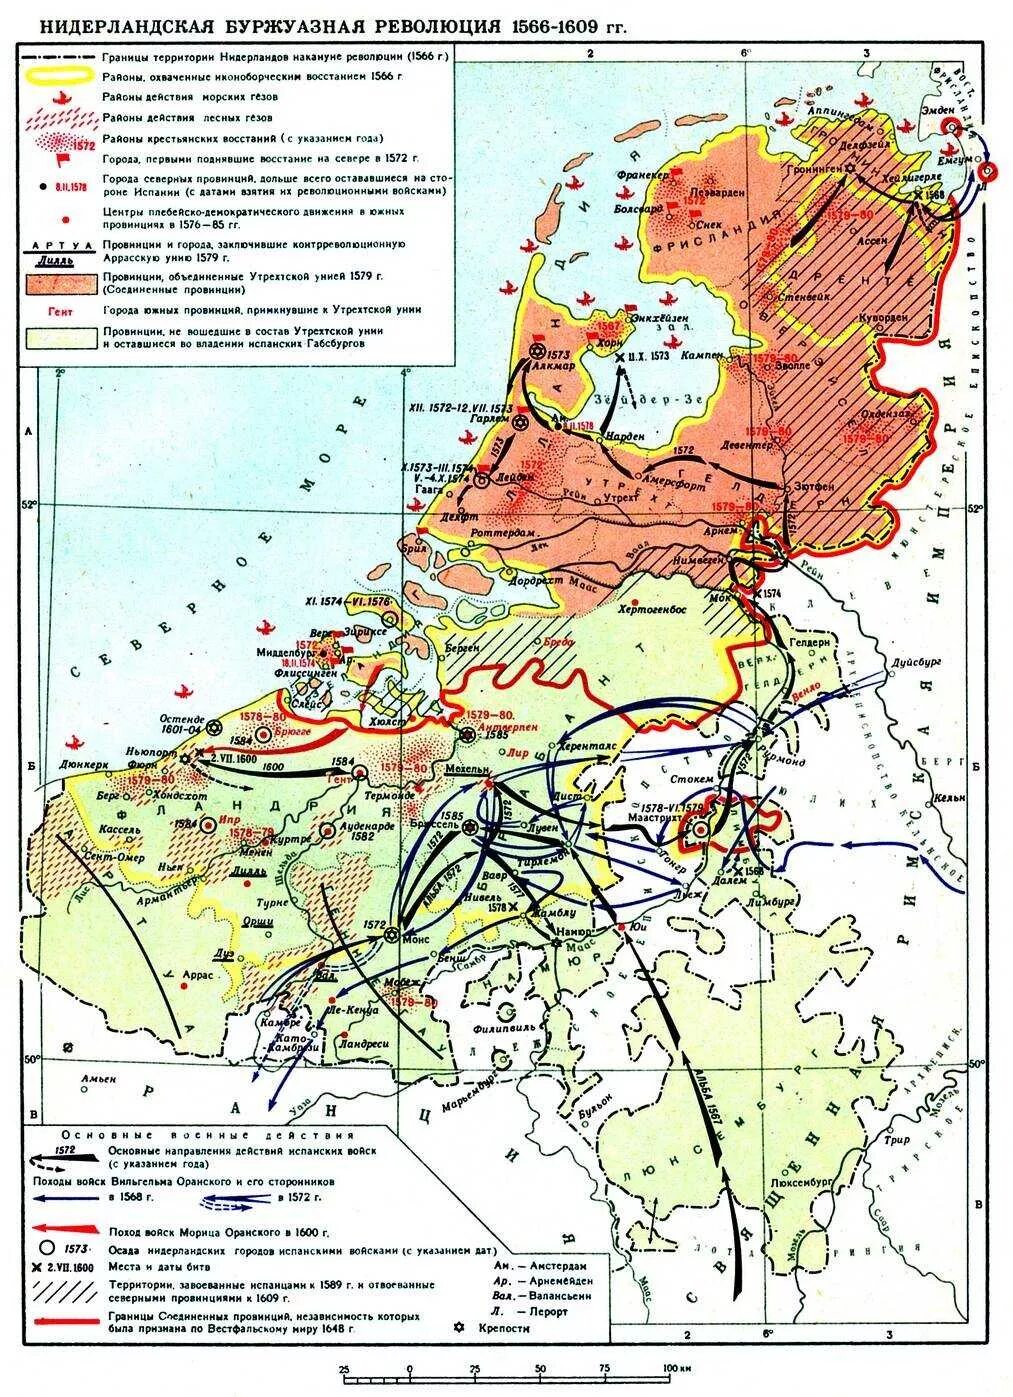 Революции 16 века. Революция в Голландии 1566-1609. Нидерландская буржуазная революция 1566-1609. Карта Нидерландская буржуазная революция 1566-1609.